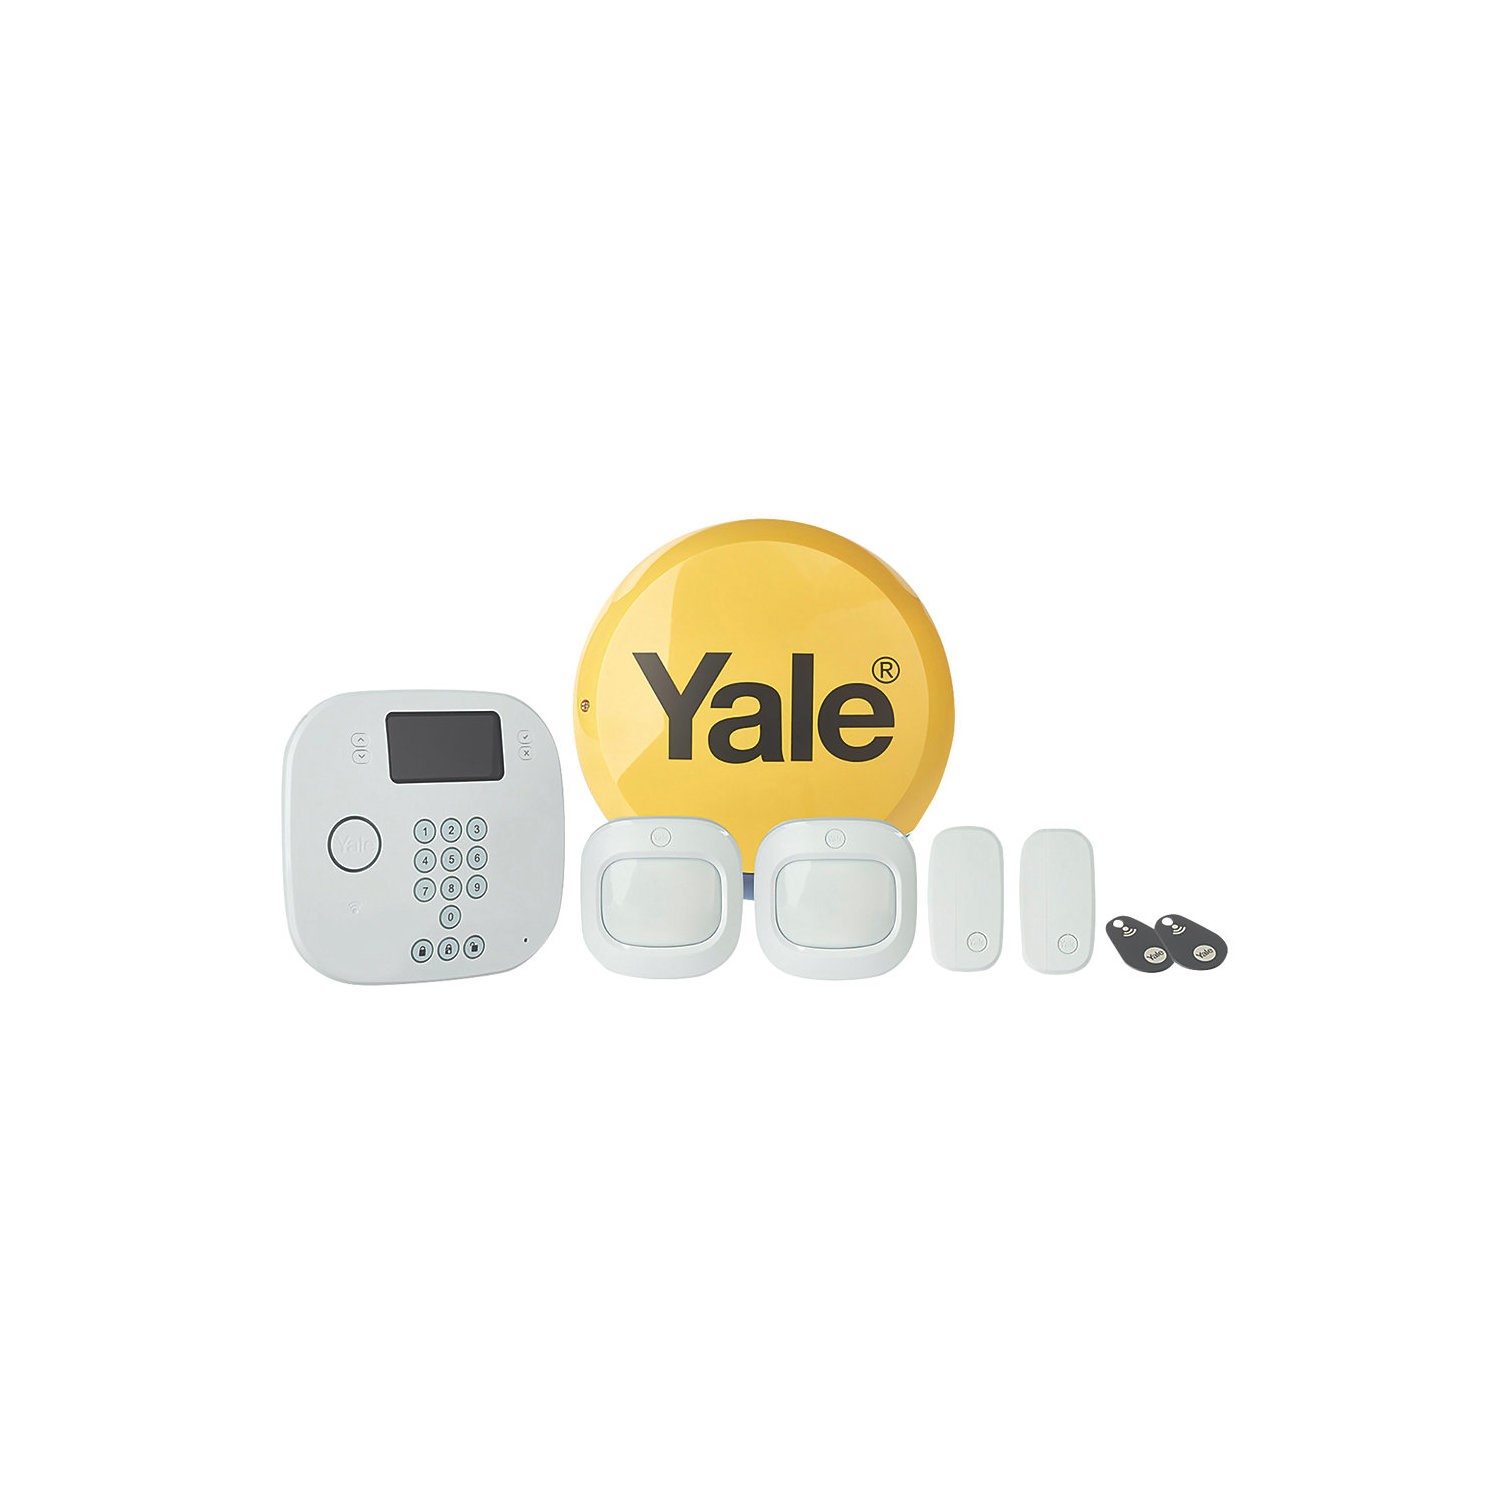 Yale Intruder Alert Alarm Kit